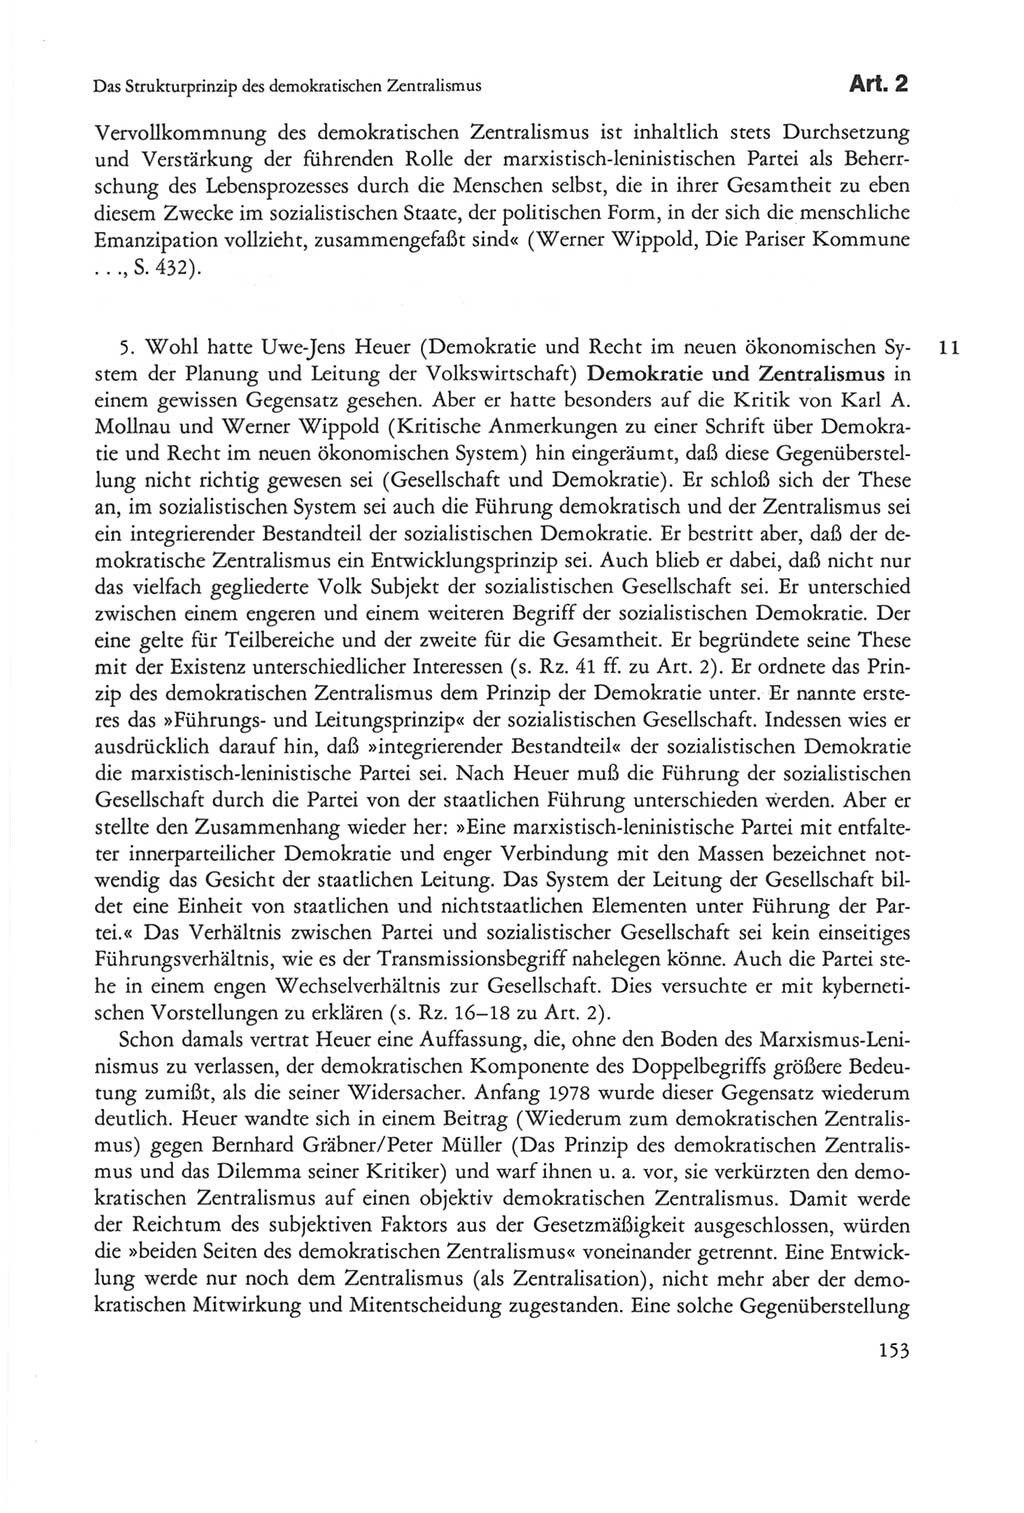 Die sozialistische Verfassung der Deutschen Demokratischen Republik (DDR), Kommentar mit einem Nachtrag 1997, Seite 153 (Soz. Verf. DDR Komm. Nachtr. 1997, S. 153)